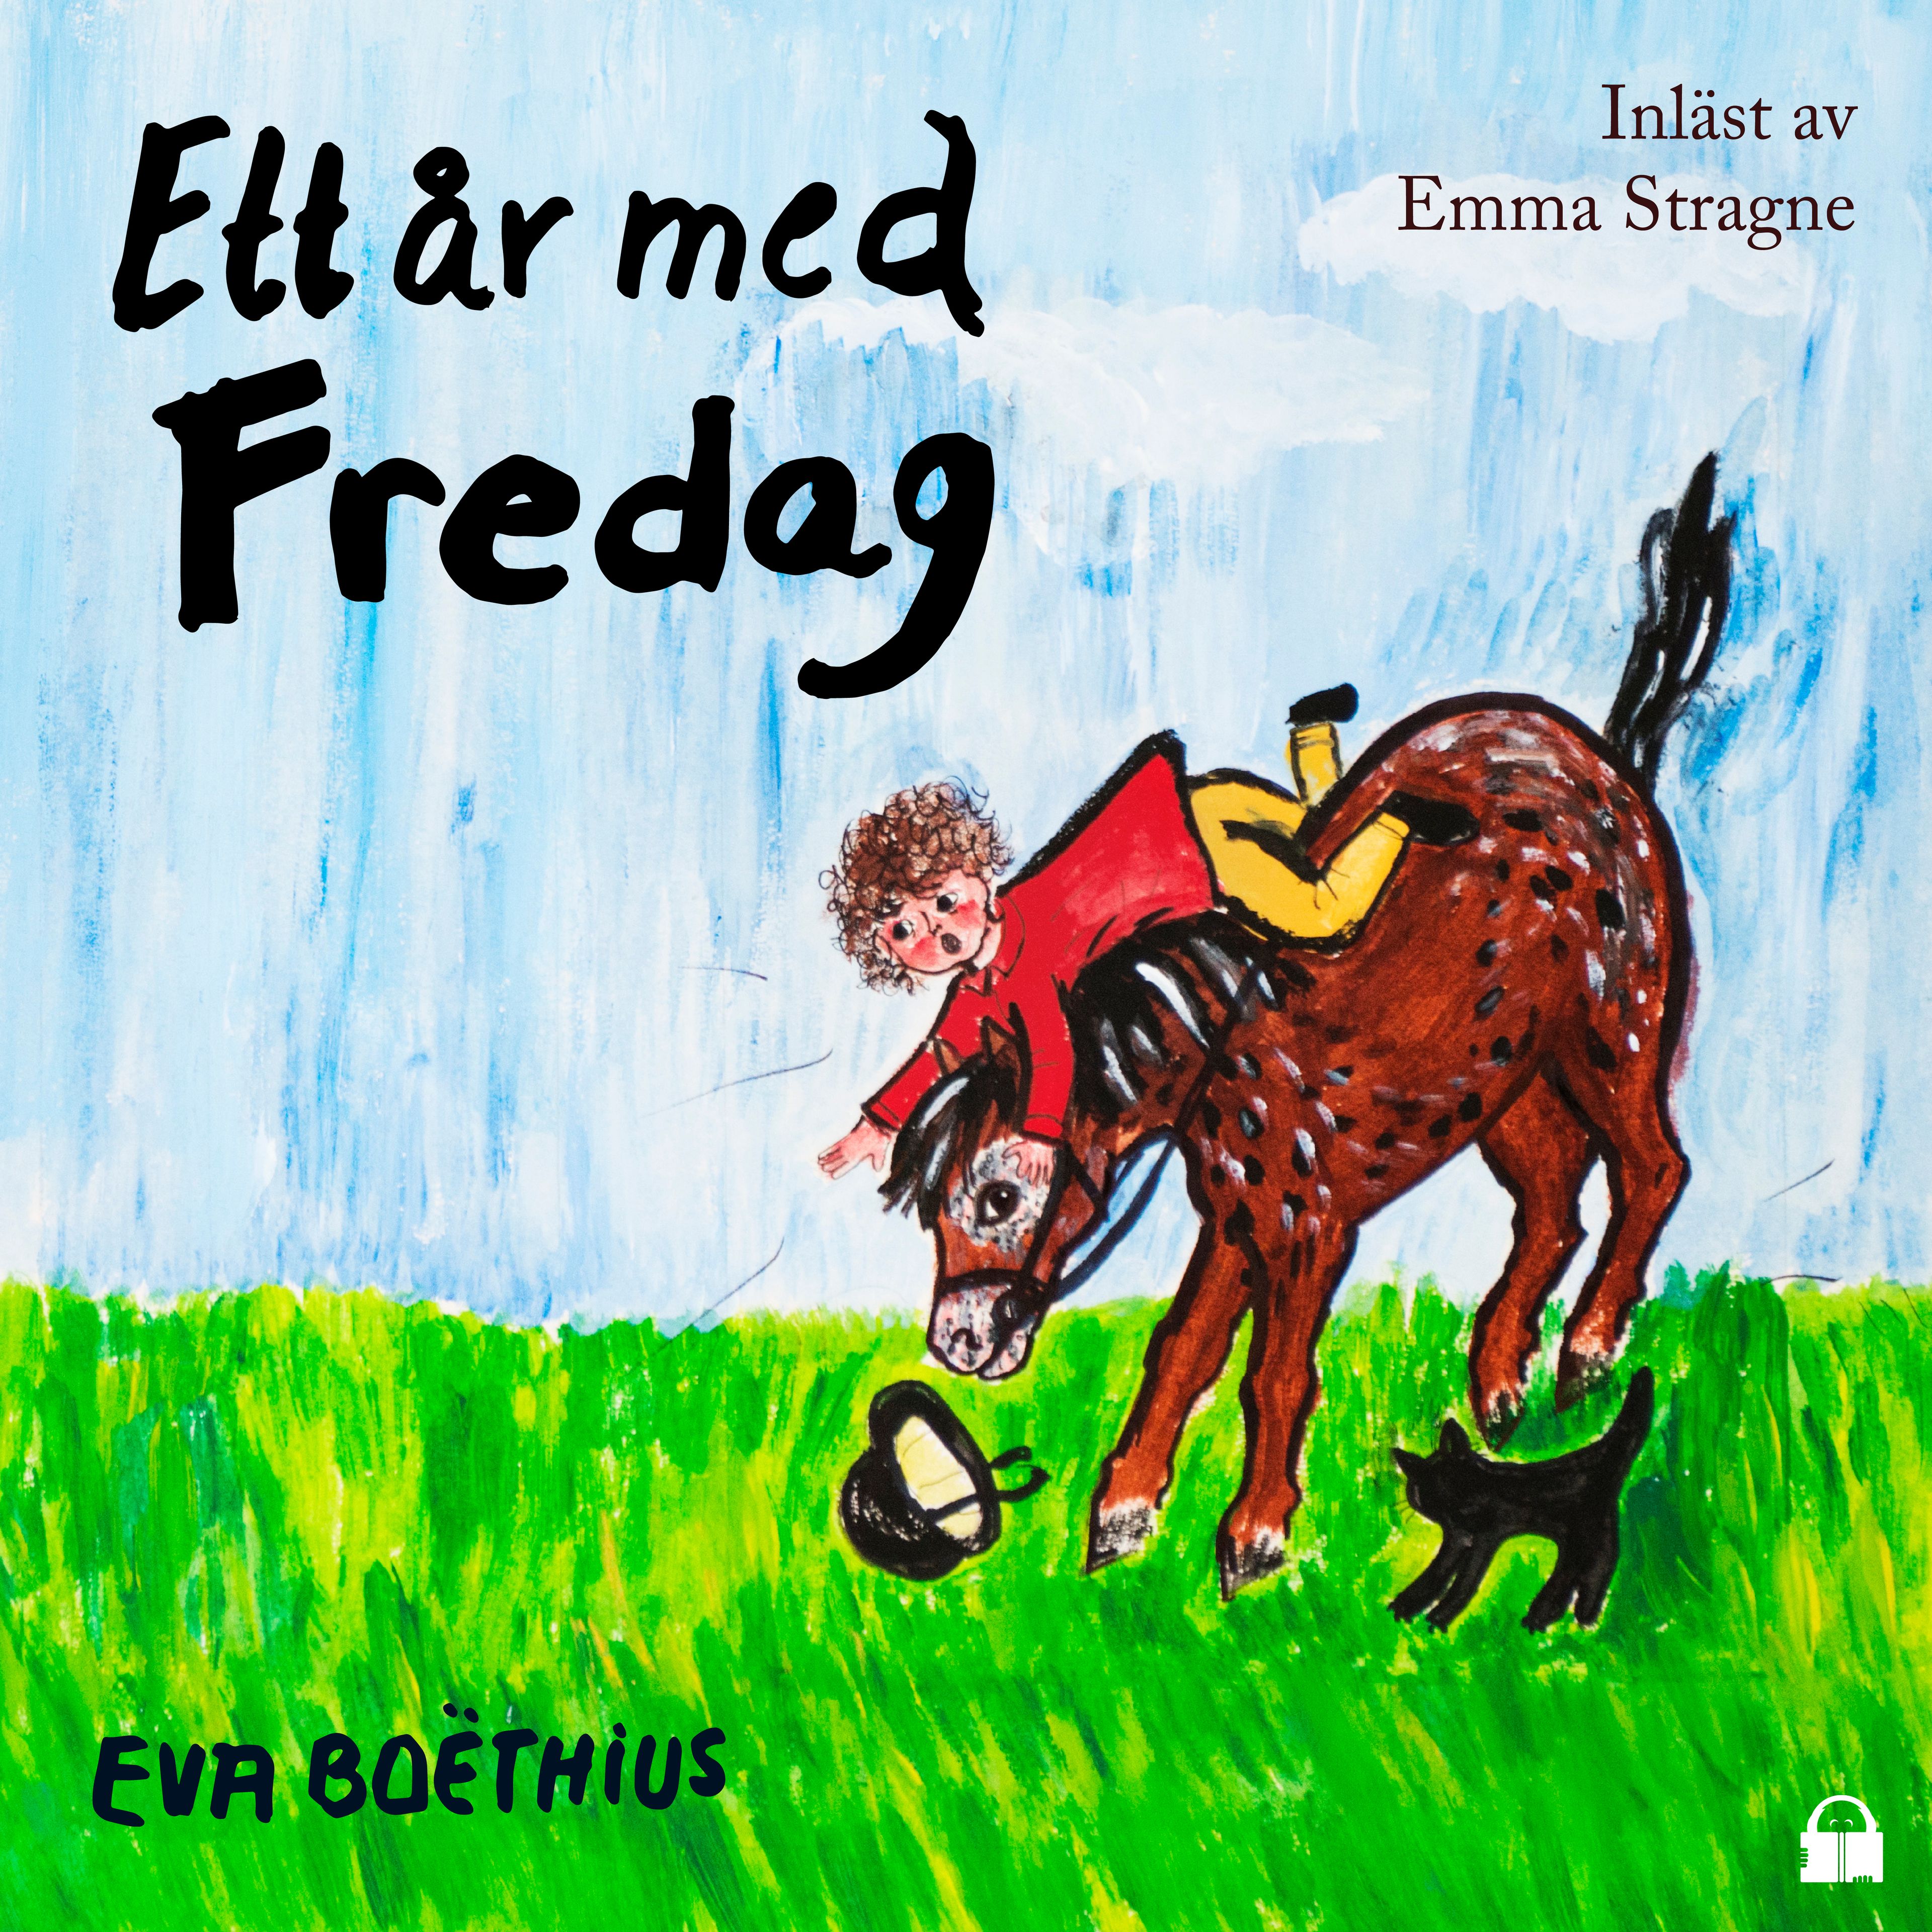 Ett år med Fredag, audiobook by Eva Boëthius